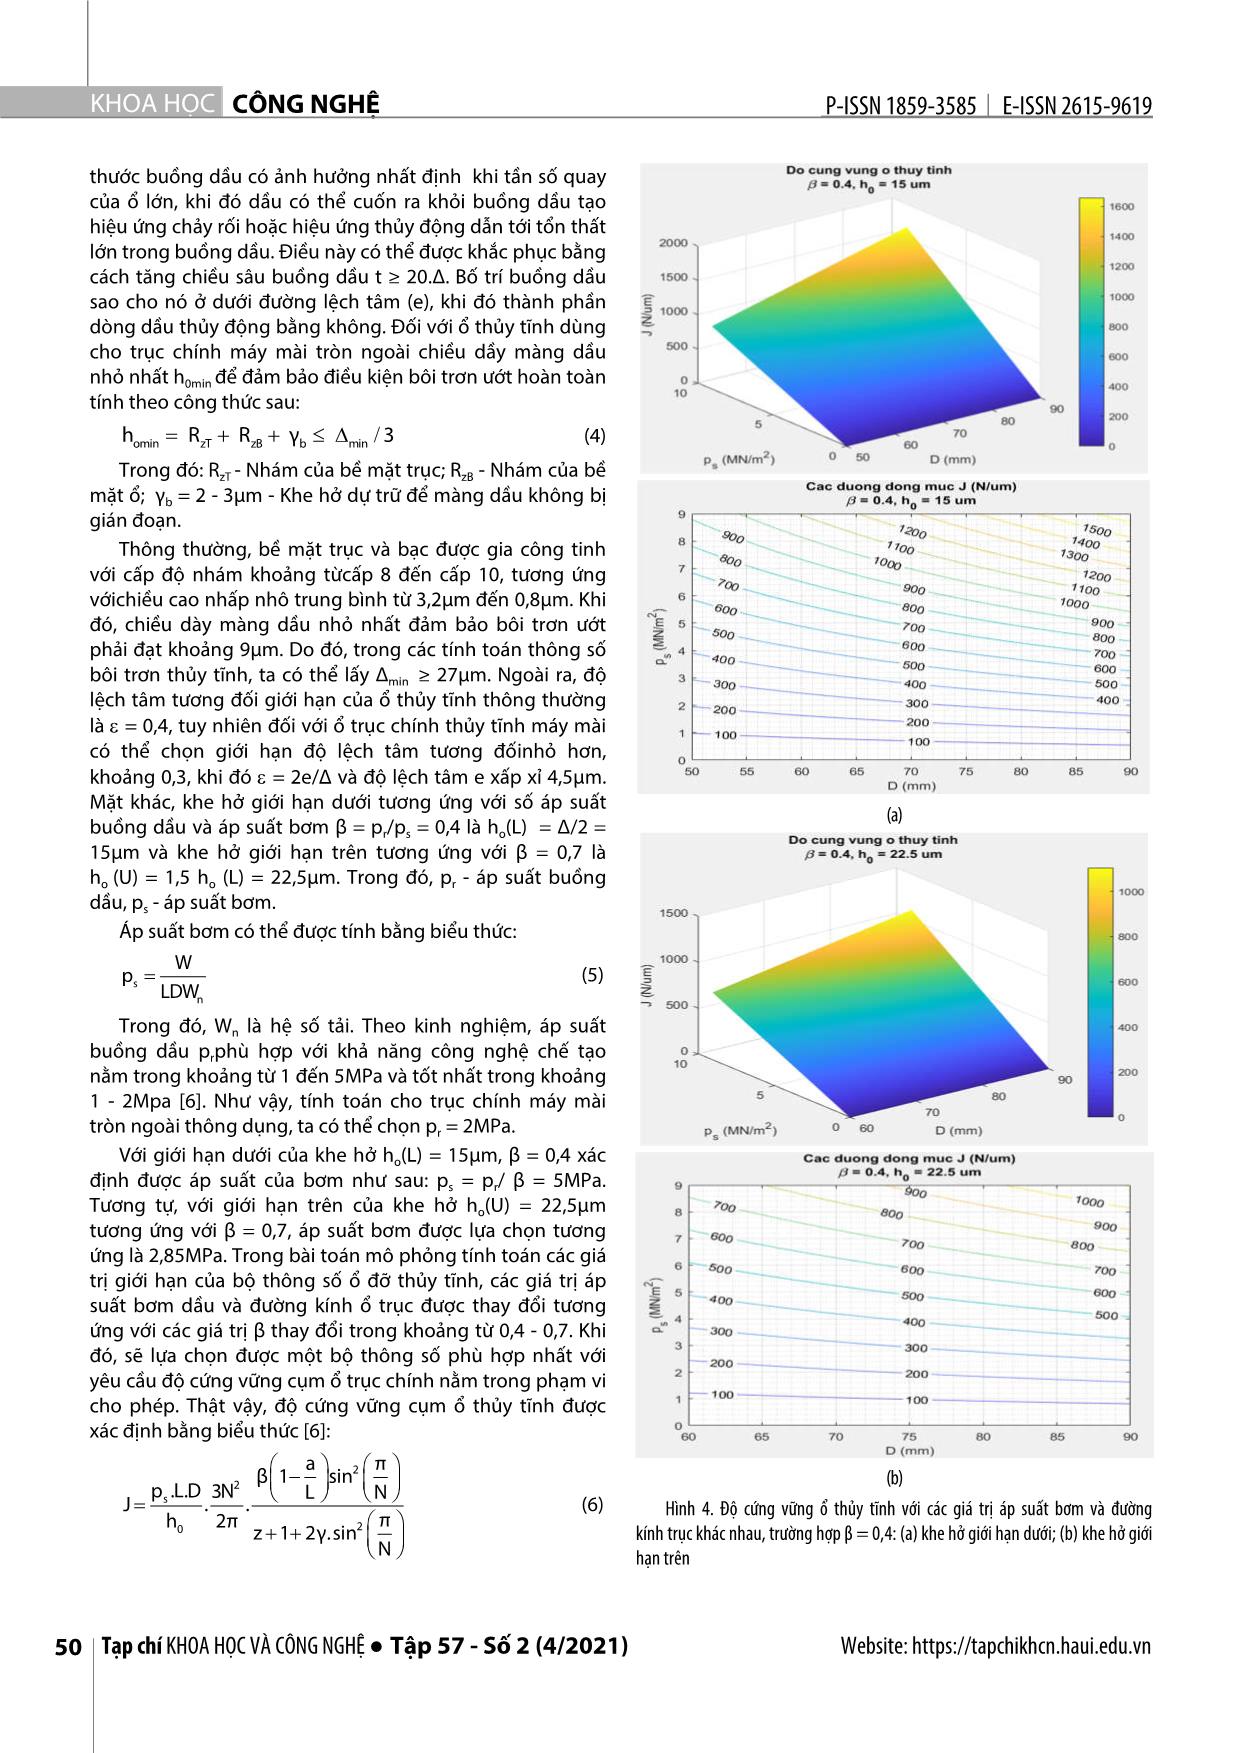 Đánh giá độ cứng vững cụm ổ thủy tĩnh trục chính với các giá trị cực hạn trên cơ sở mô phỏng số trang 3